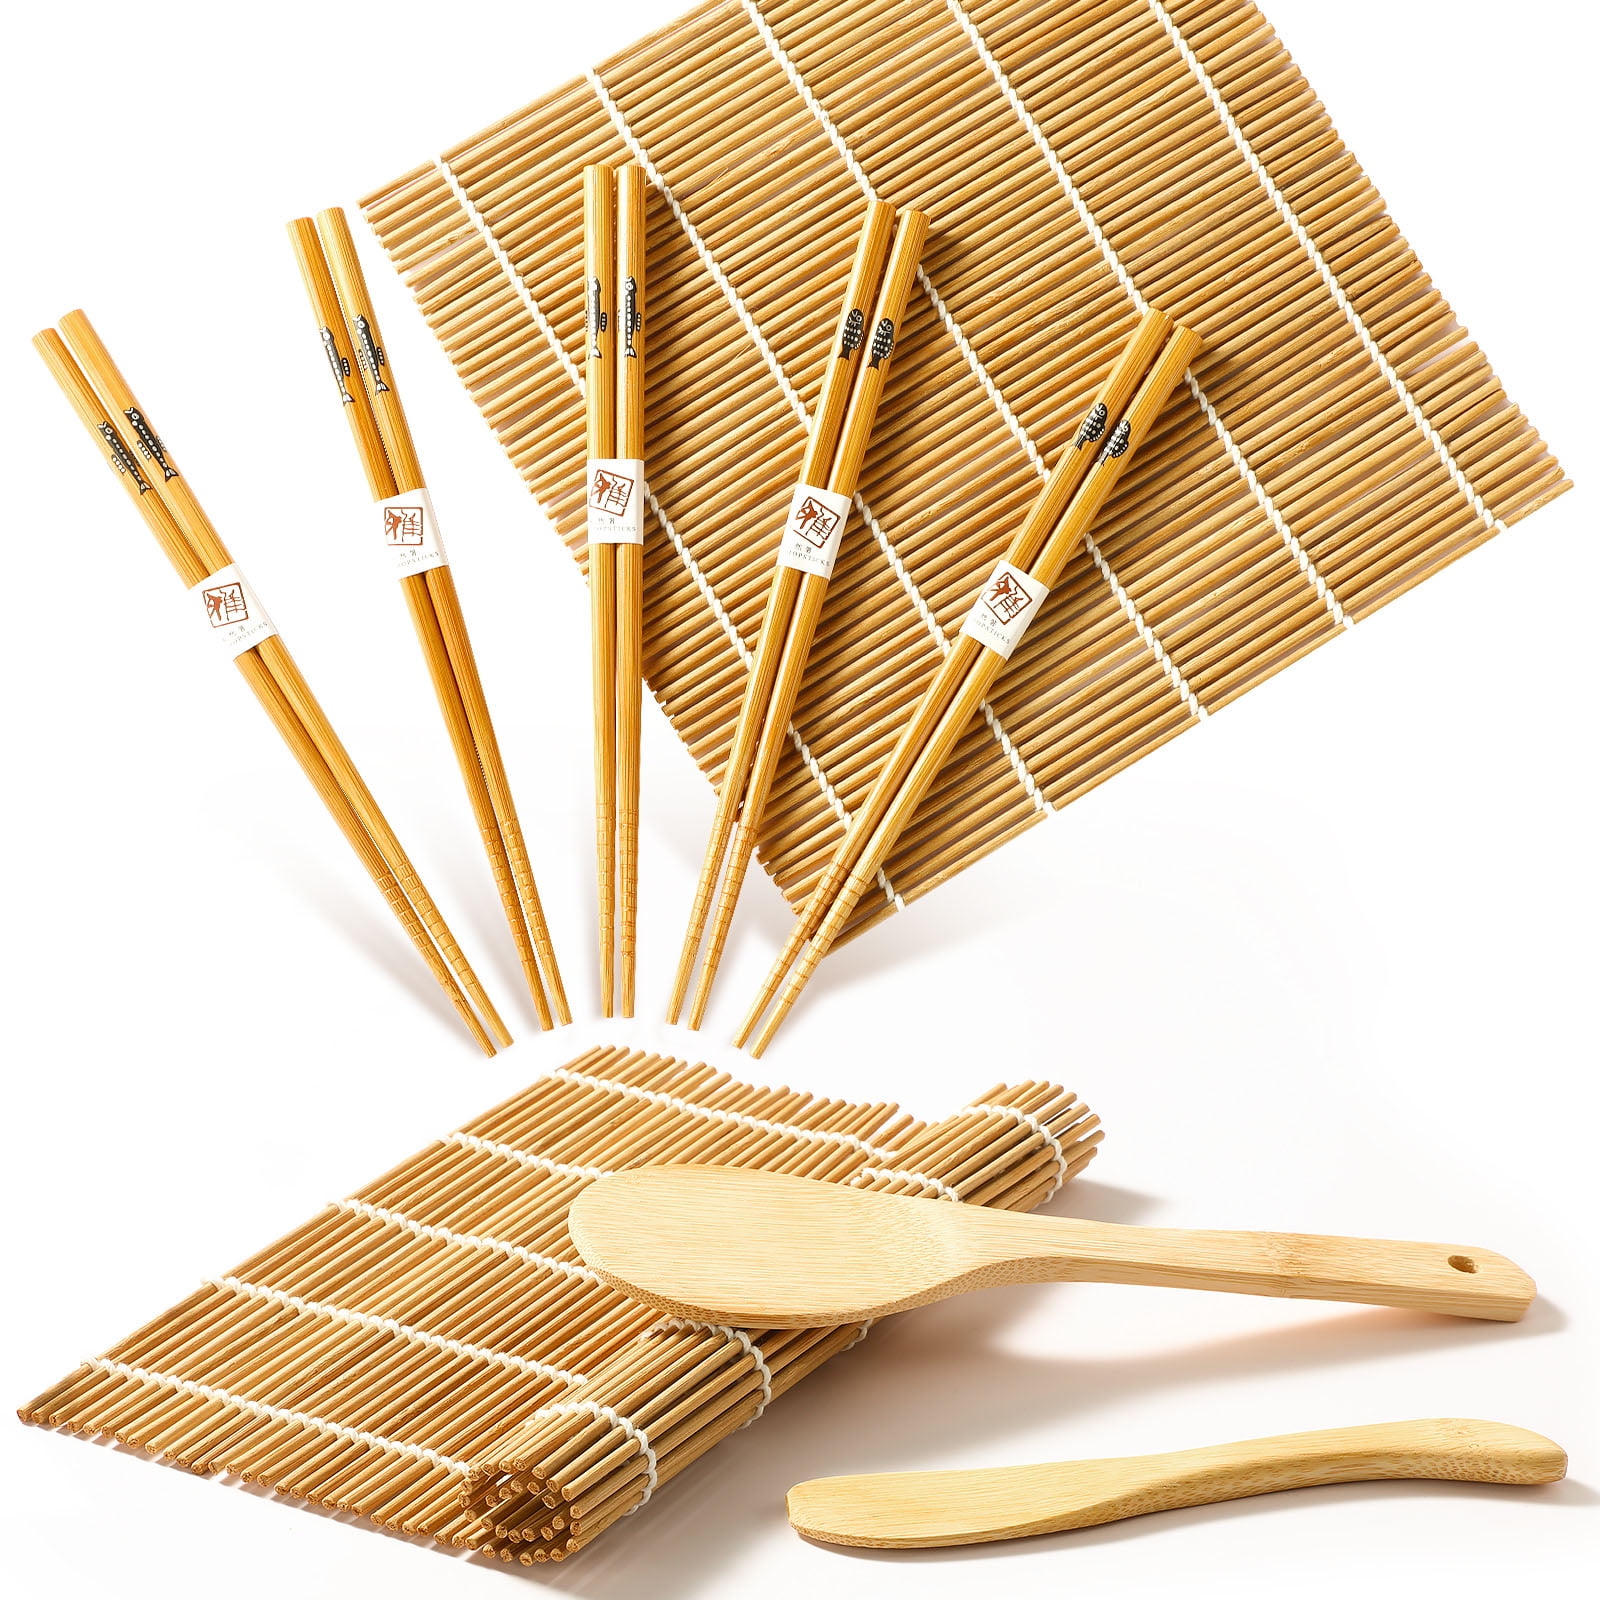 Venalisa Sushi Making Kit With Bamboo Mats, Diy Sushi Roller